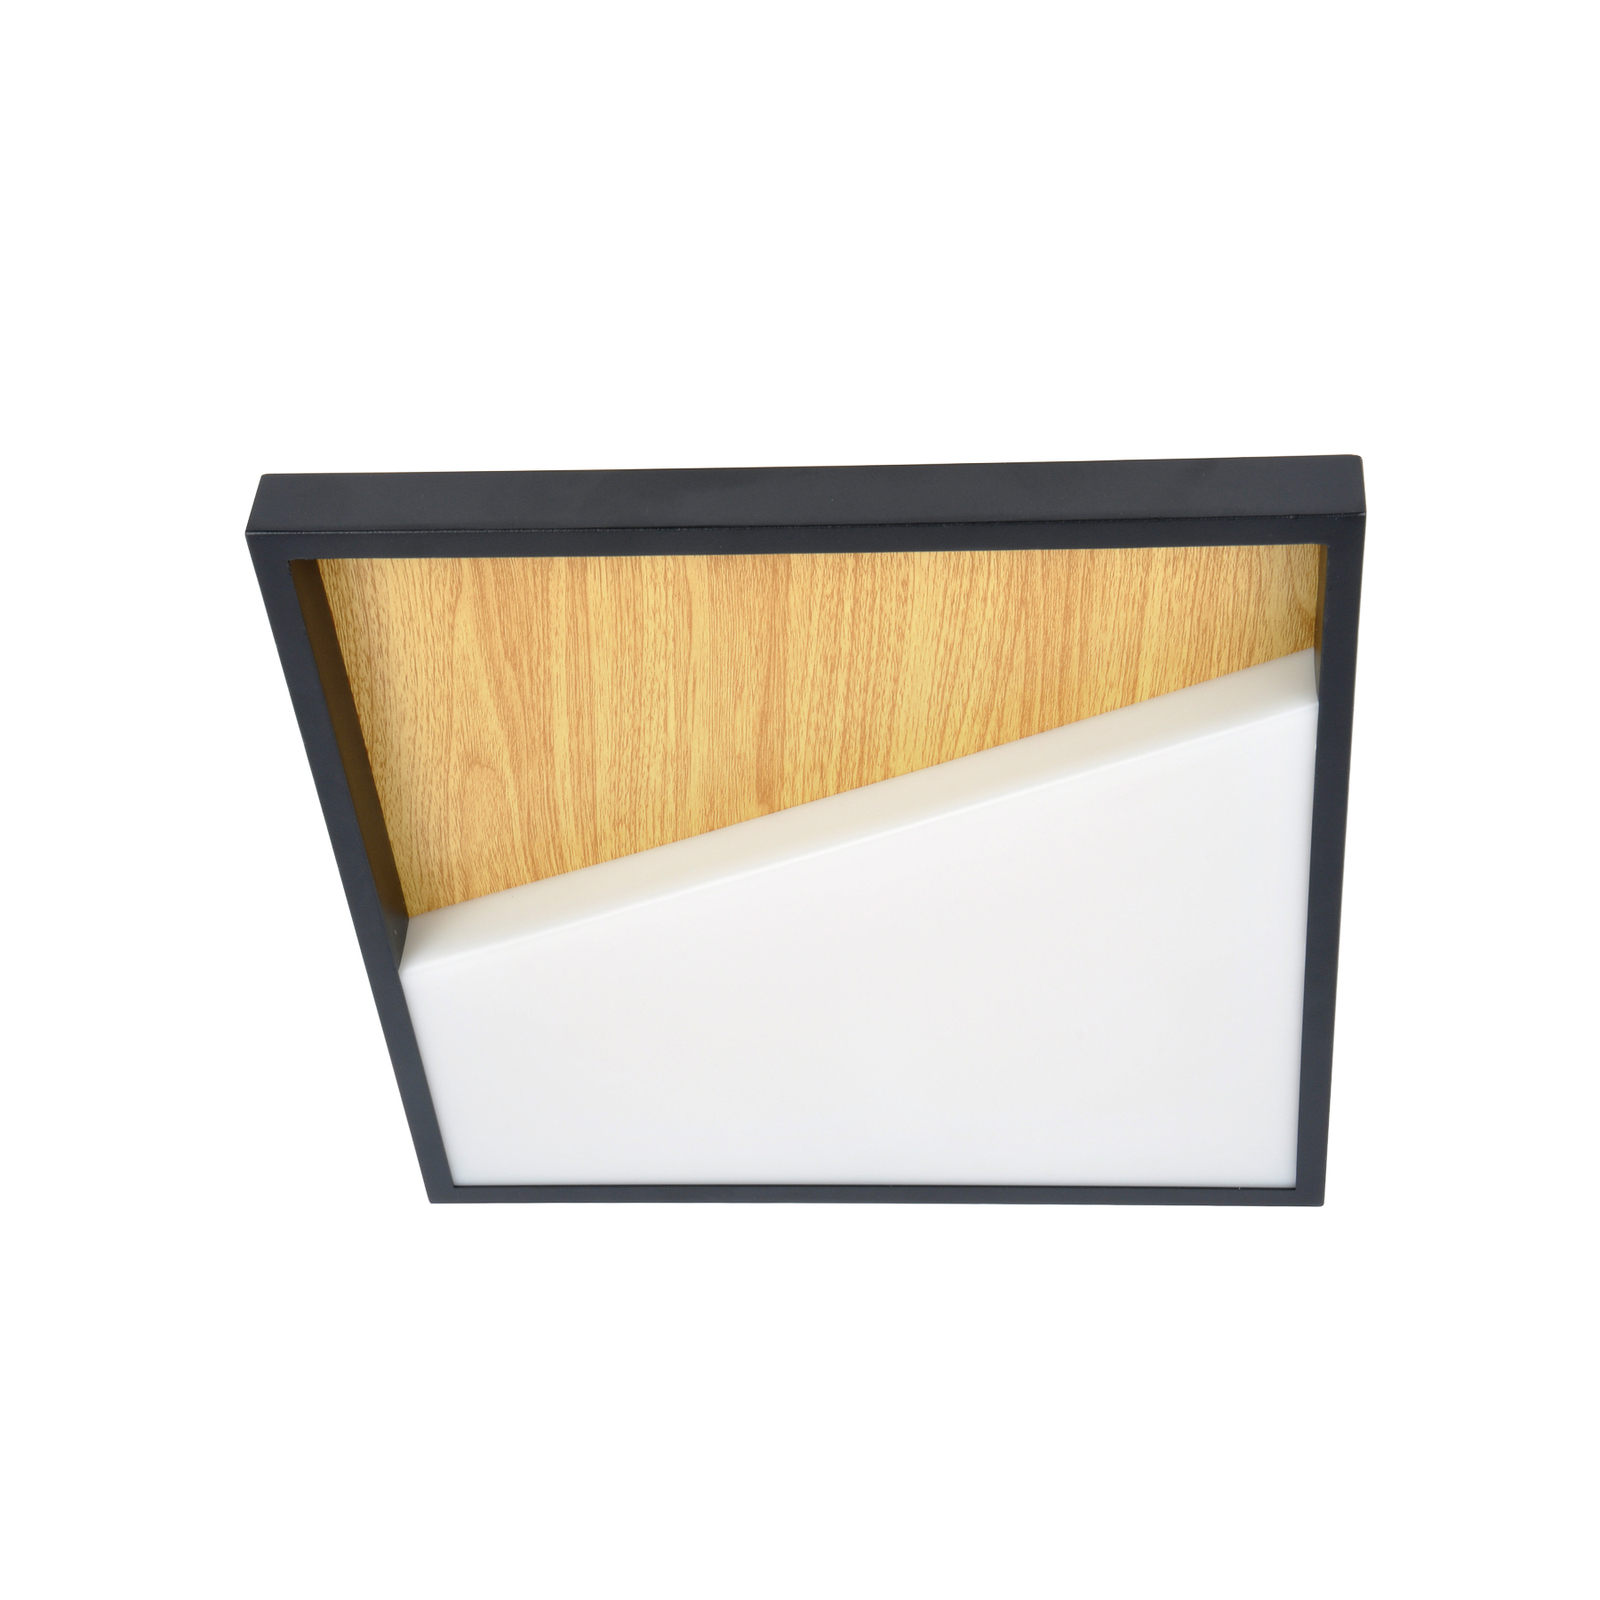 Vista LED LED, lemn deschis/negru, 40 x 40 cm